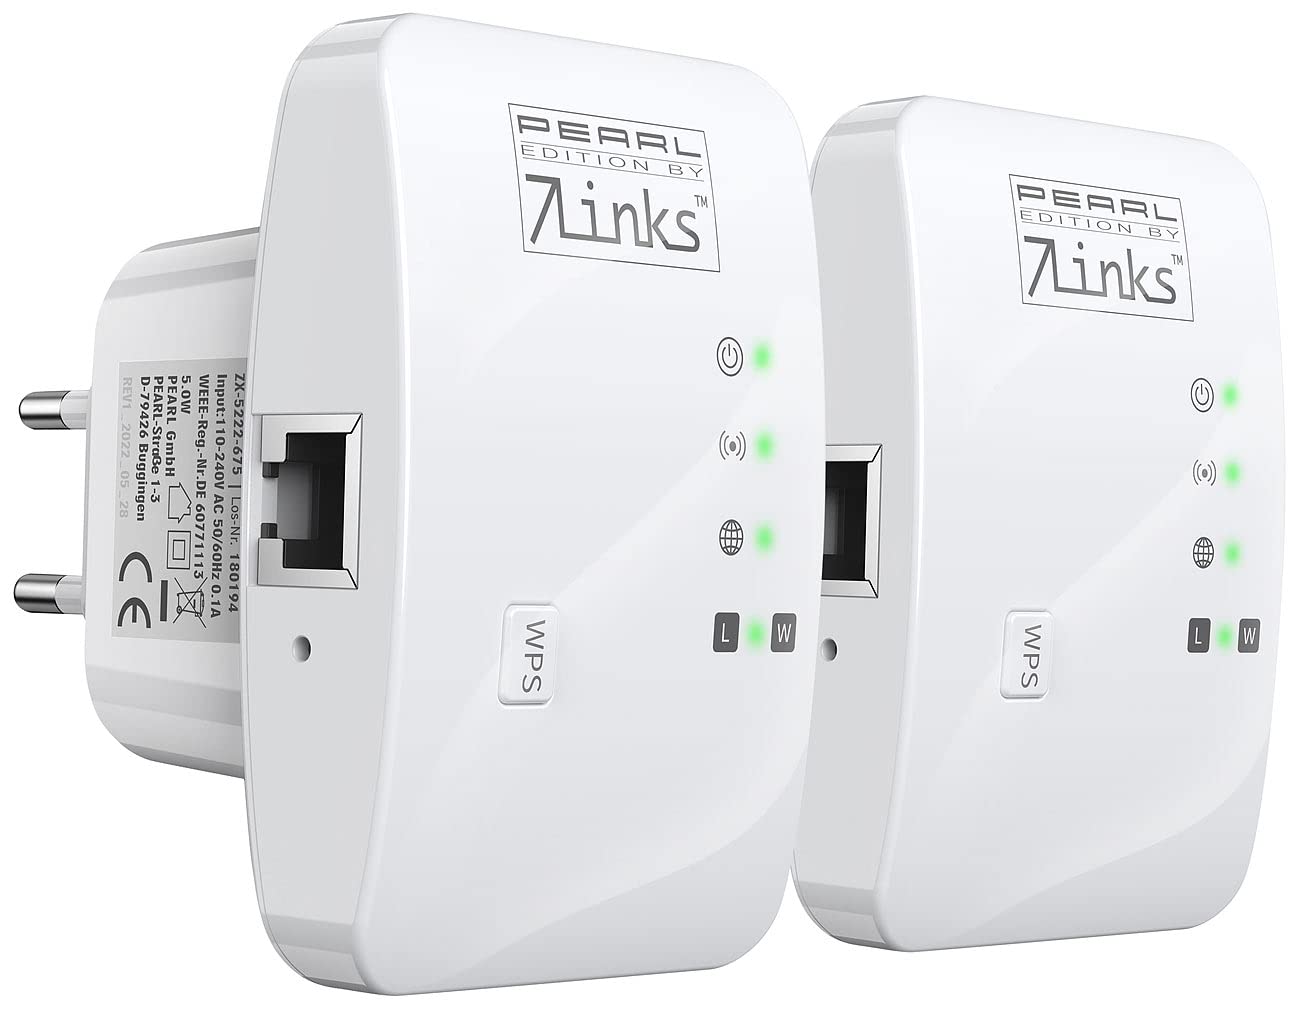 7links WiFi Extender: 2er-Set Mini-WLAN-Repeater mit WPS-Taste, 300 Mbit/s, 2,4 GHz & LAN (WLAN Verstärkung, Kleiner WLAN-Repeater, Geräteanschluss)